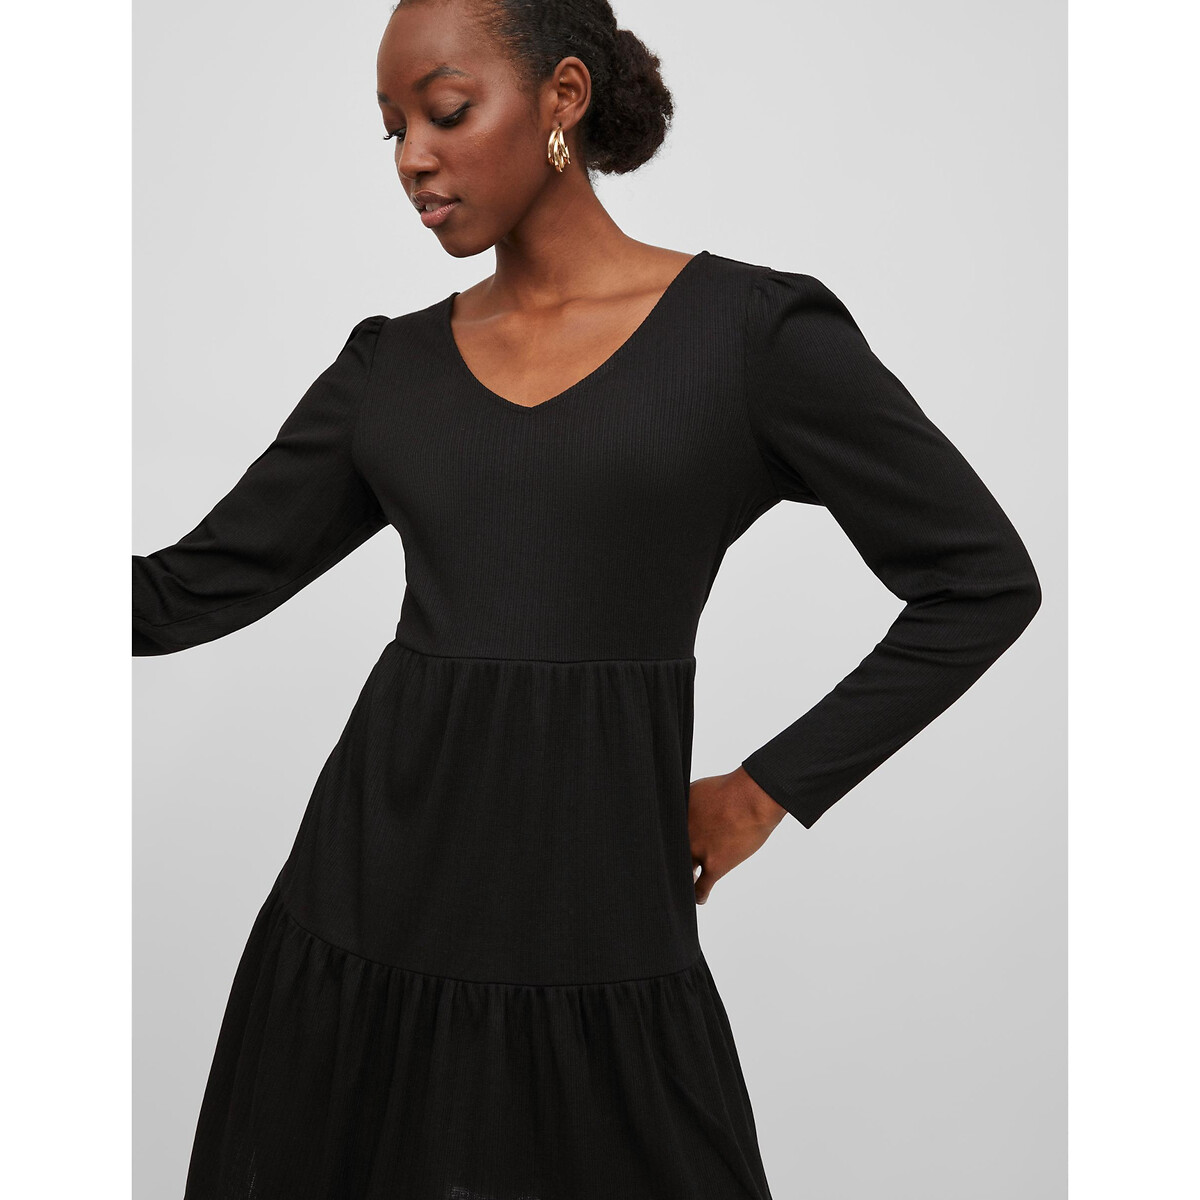 Платье С воланами V-образный вырез L черный LaRedoute, размер L - фото 4